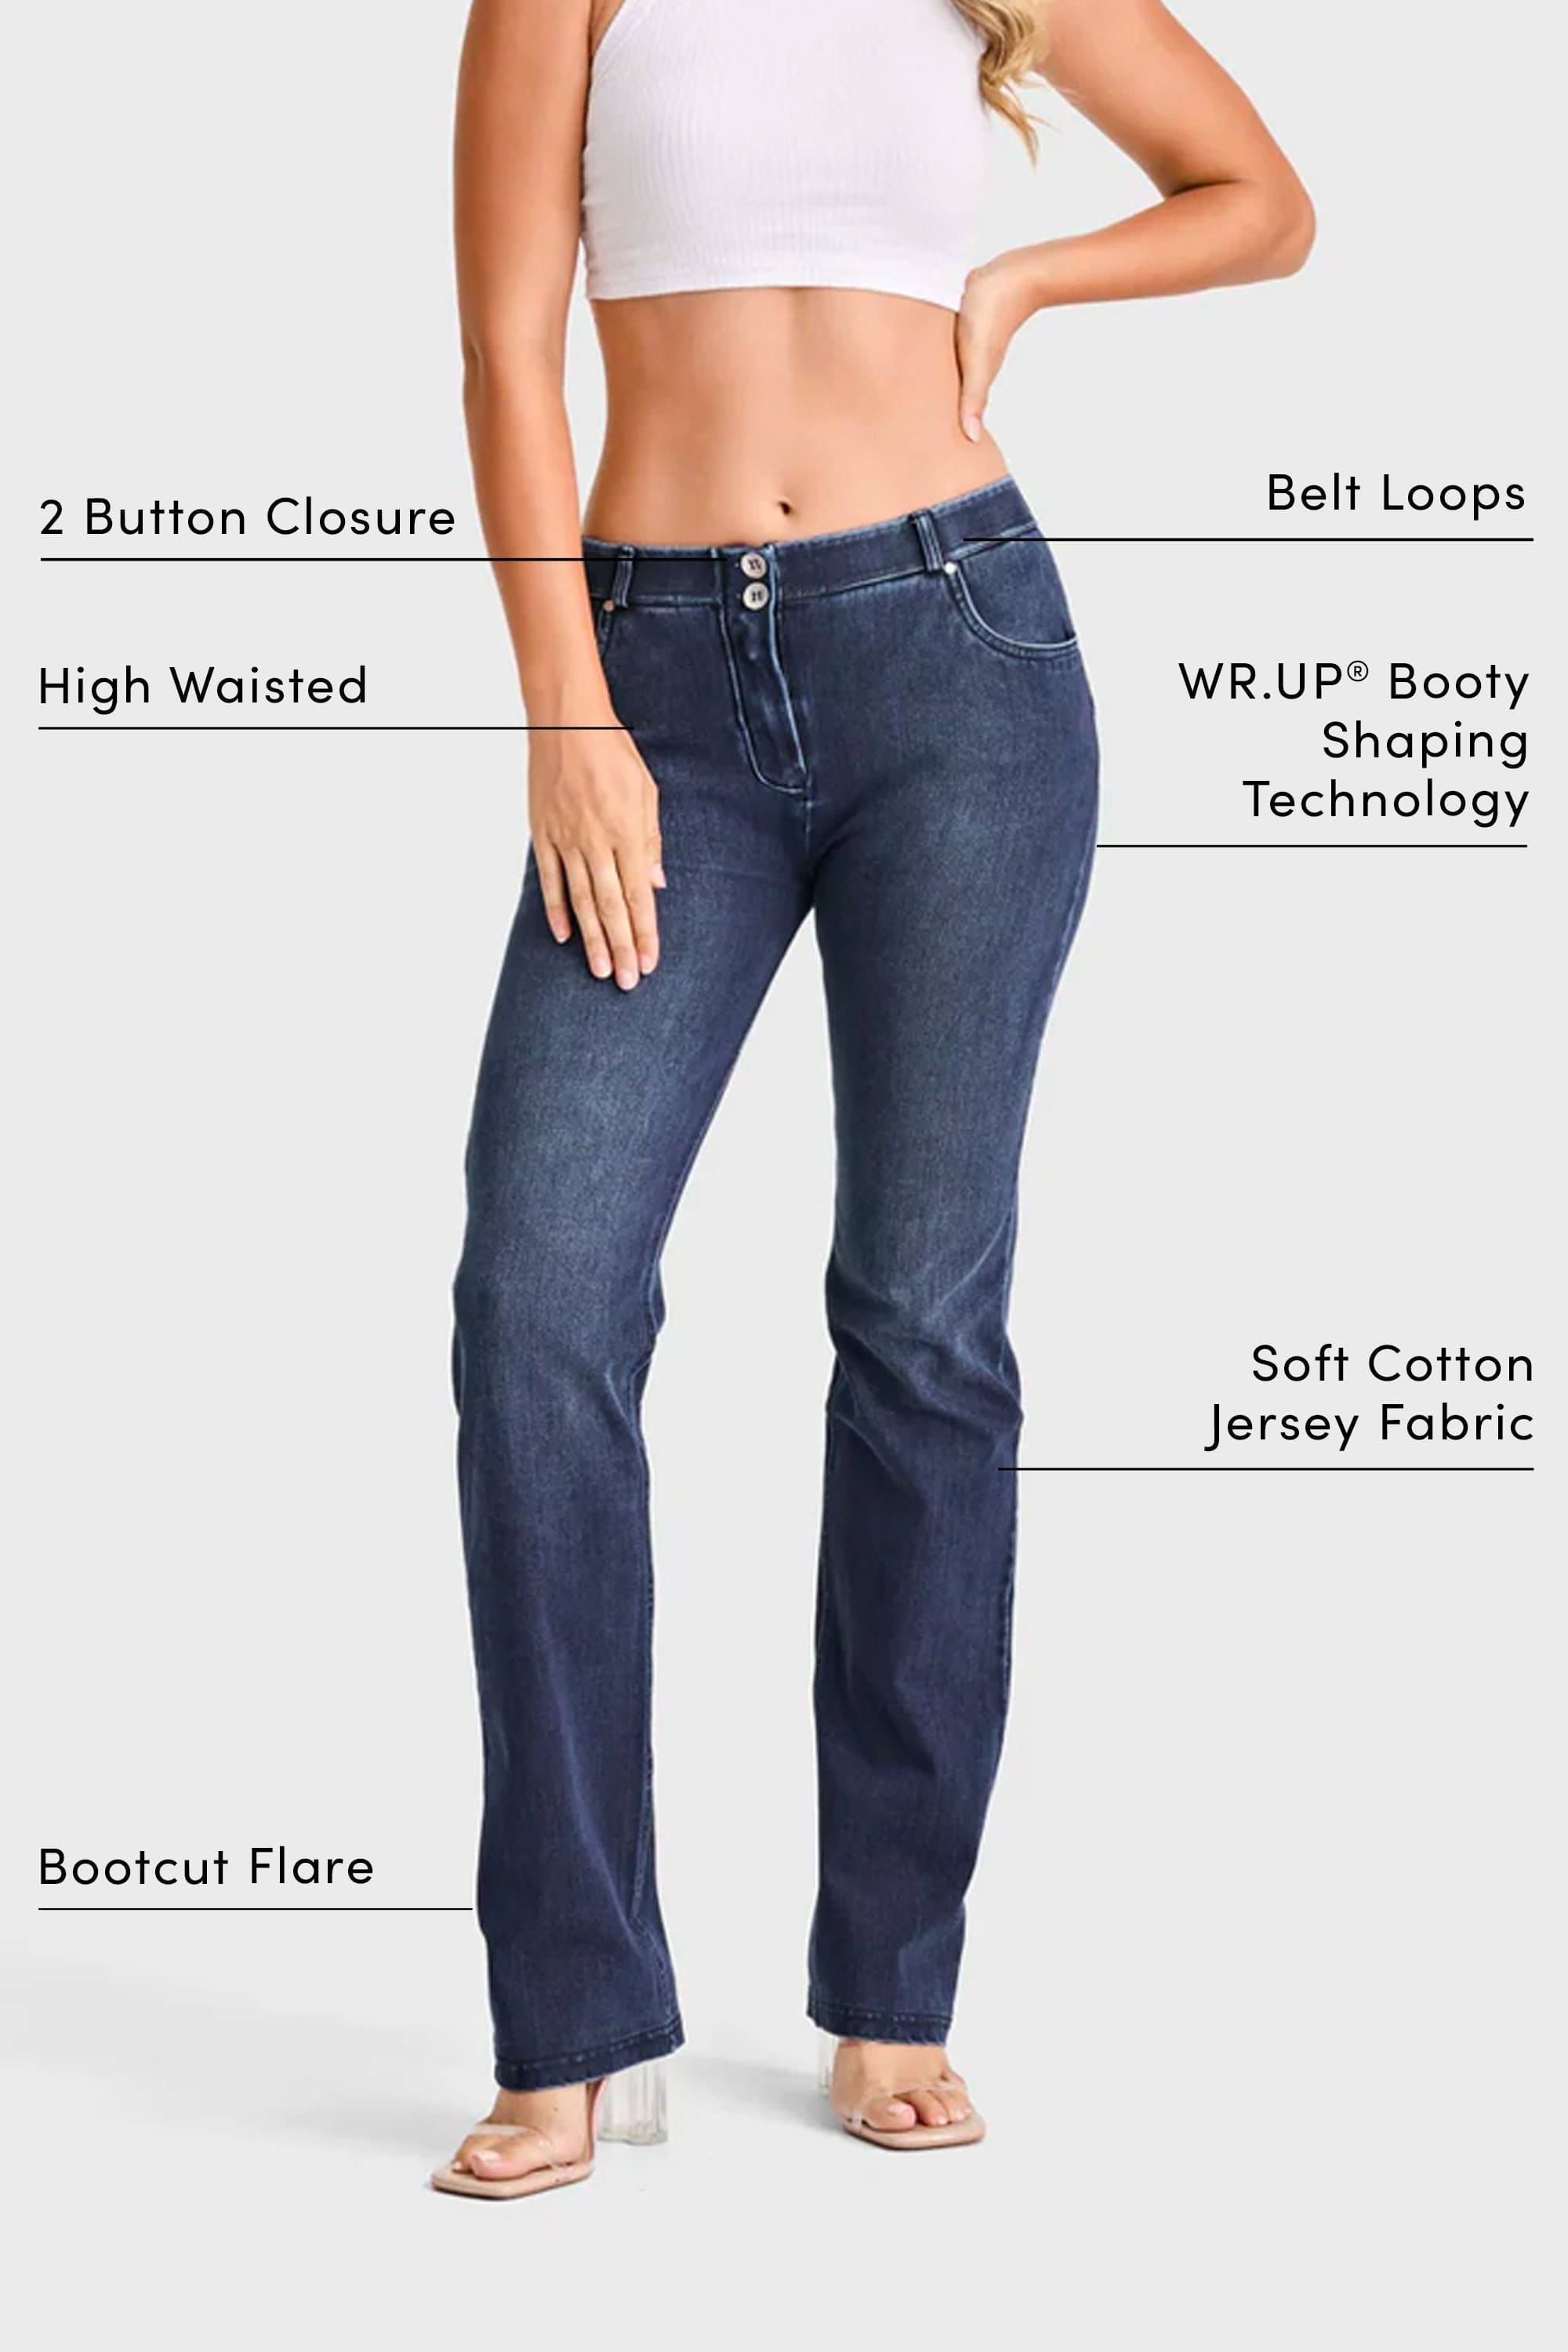 WR.UP® SNUG Jeans - 2 Button High Waisted - Bootcut - Dark Blue + Blue Stitching 2